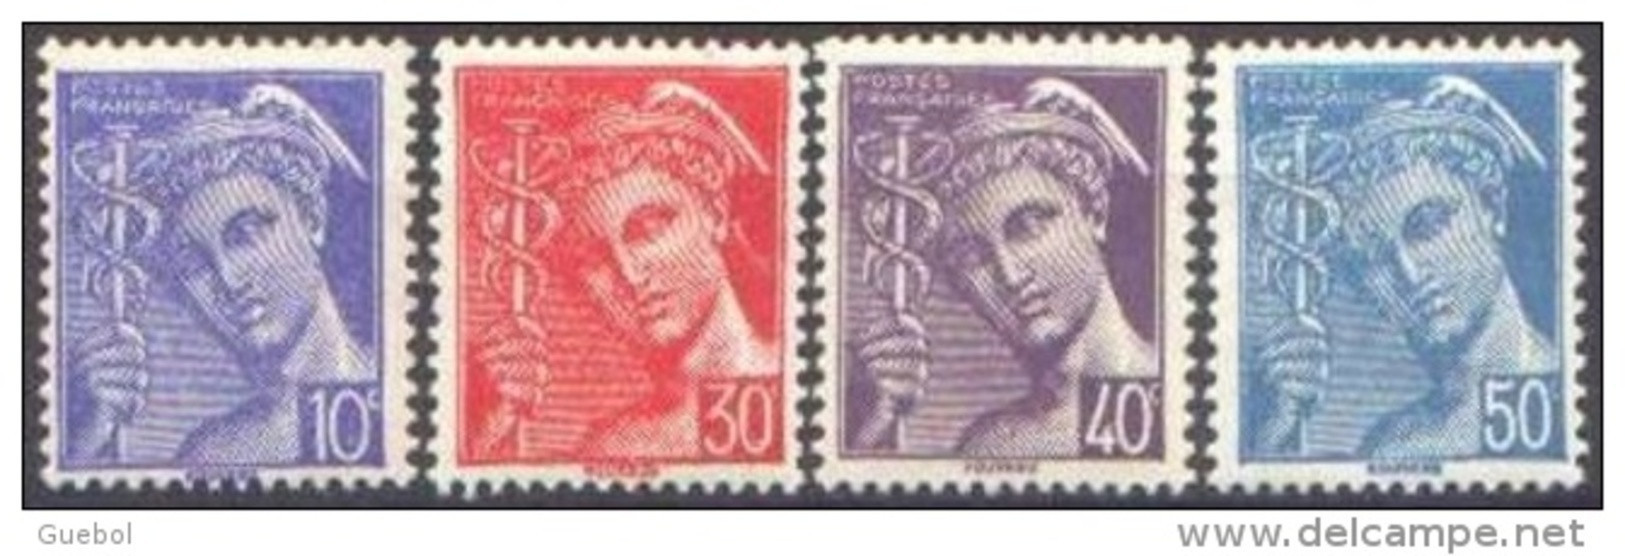 France Mercure N°  546 + 547 + 548 Et 549 ** Les - 10, 30, 40, Et 50 Centimes - Légende Poste Française - 1938-42 Mercure